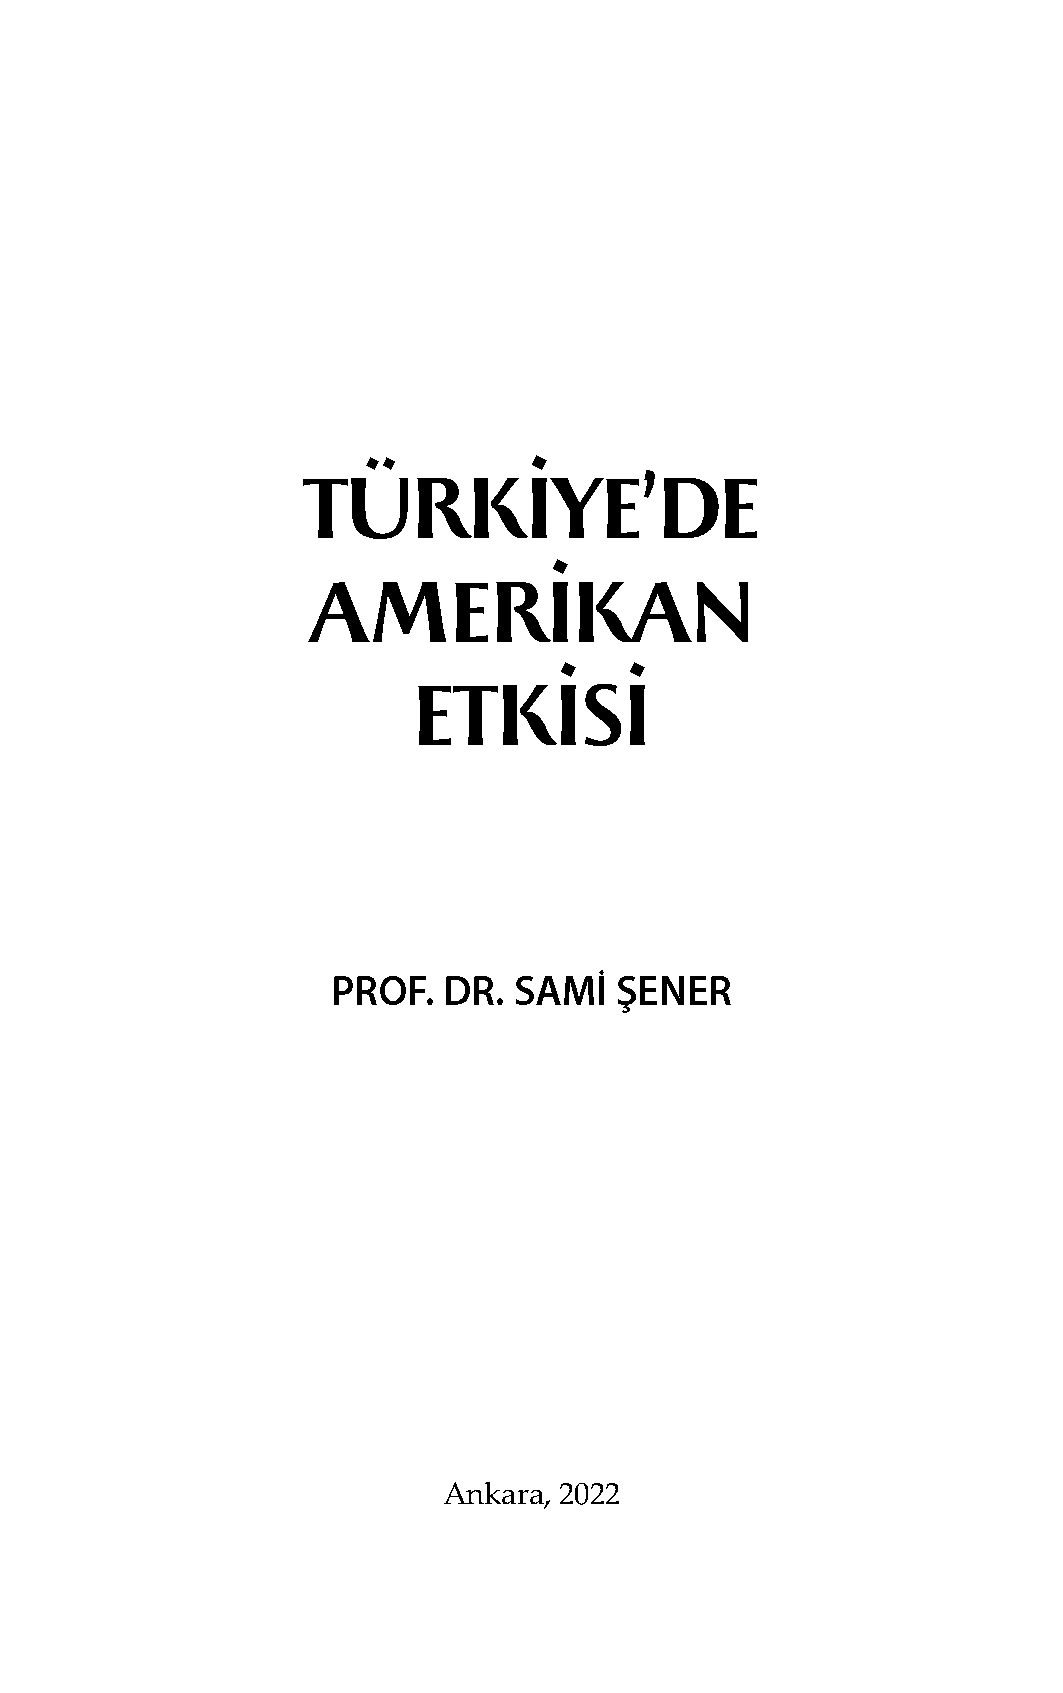 Türkiye’de%20Amerikan%20Etkisi%20-%20%20Prof.%20Dr.%20Sami%20Şener